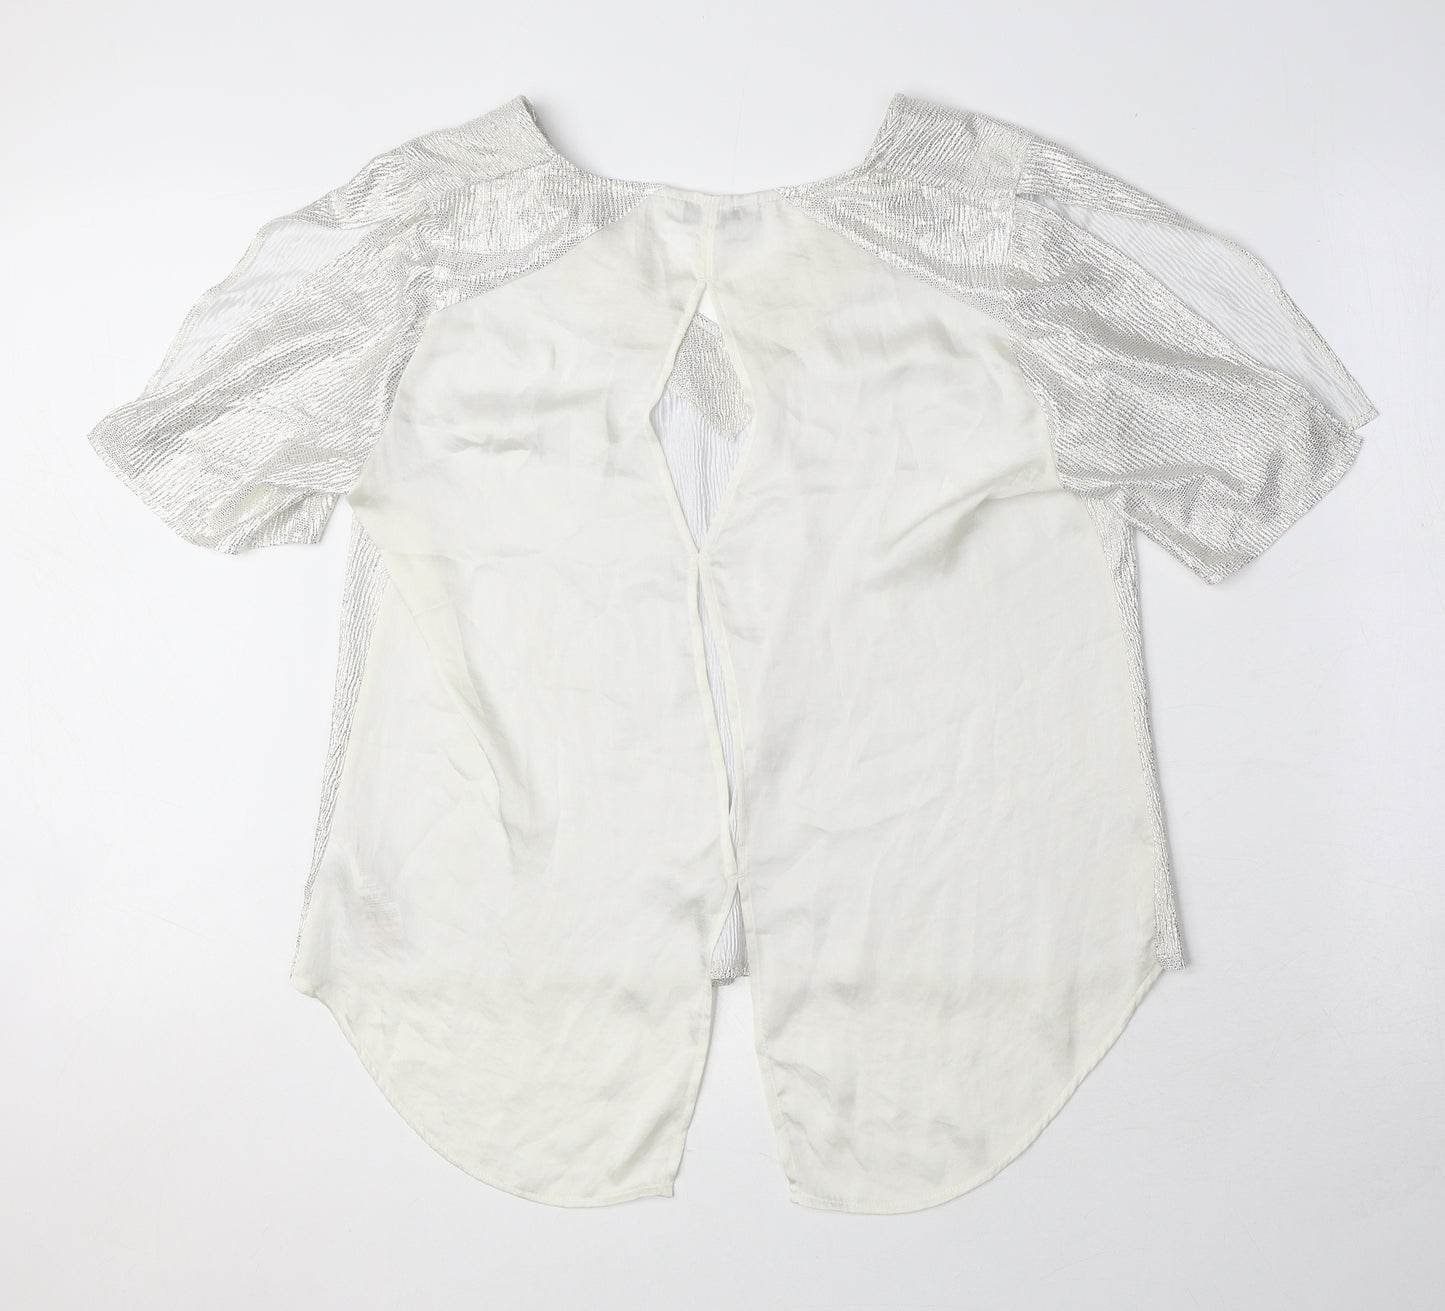 NEXT Womens Silver Polyester Basic Blouse Size 14 V-Neck - Shiny